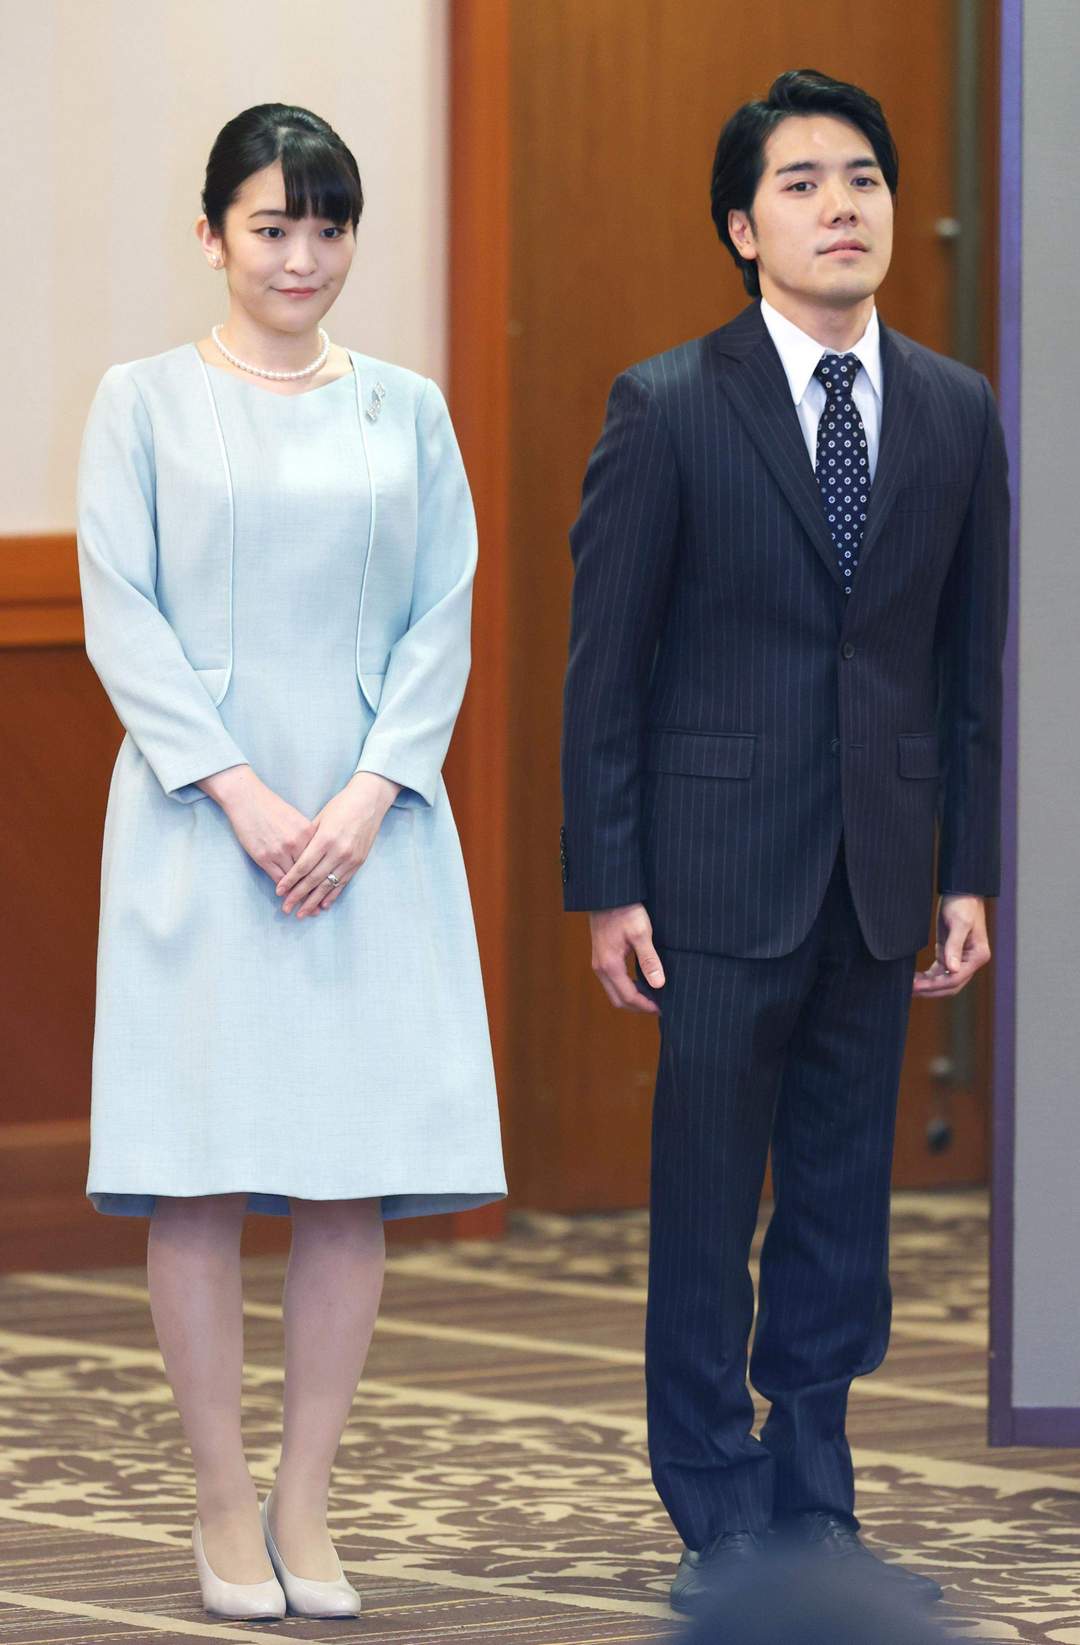 Без титула и наследства: японская принцесса Мако лишилась всего, выйдя замуж за простолюдина